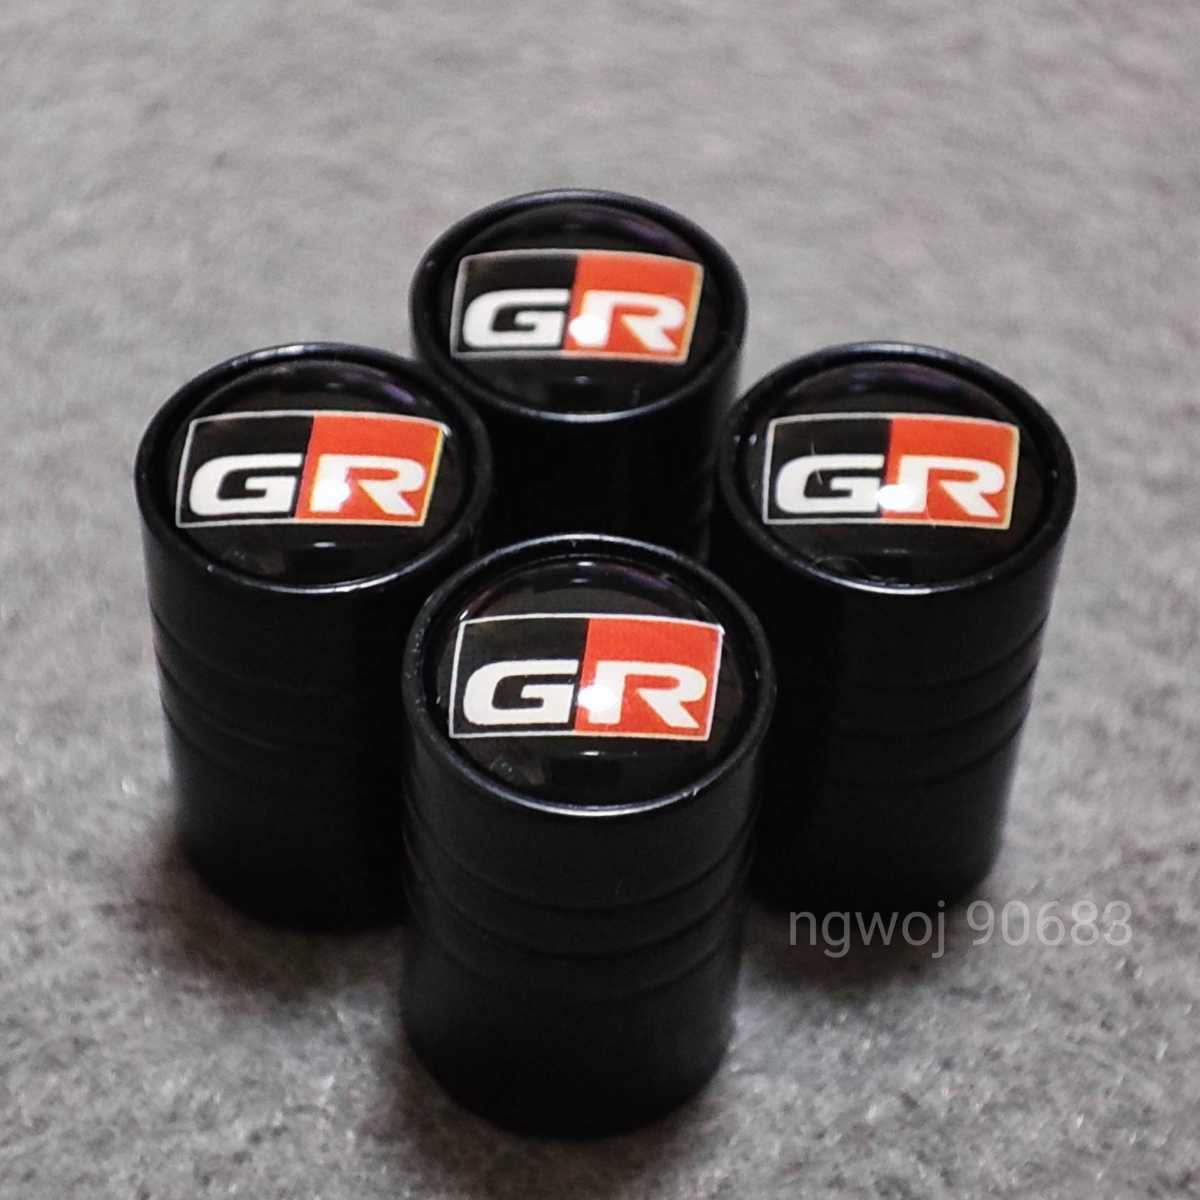 【GR】GAZOO Racing【ロングtype】タイヤバルブキャップ 4P【ブラック】プリウスPHV HILUX ランドクルーザー C-HR コペン 86 YARIS SUPRA_画像1